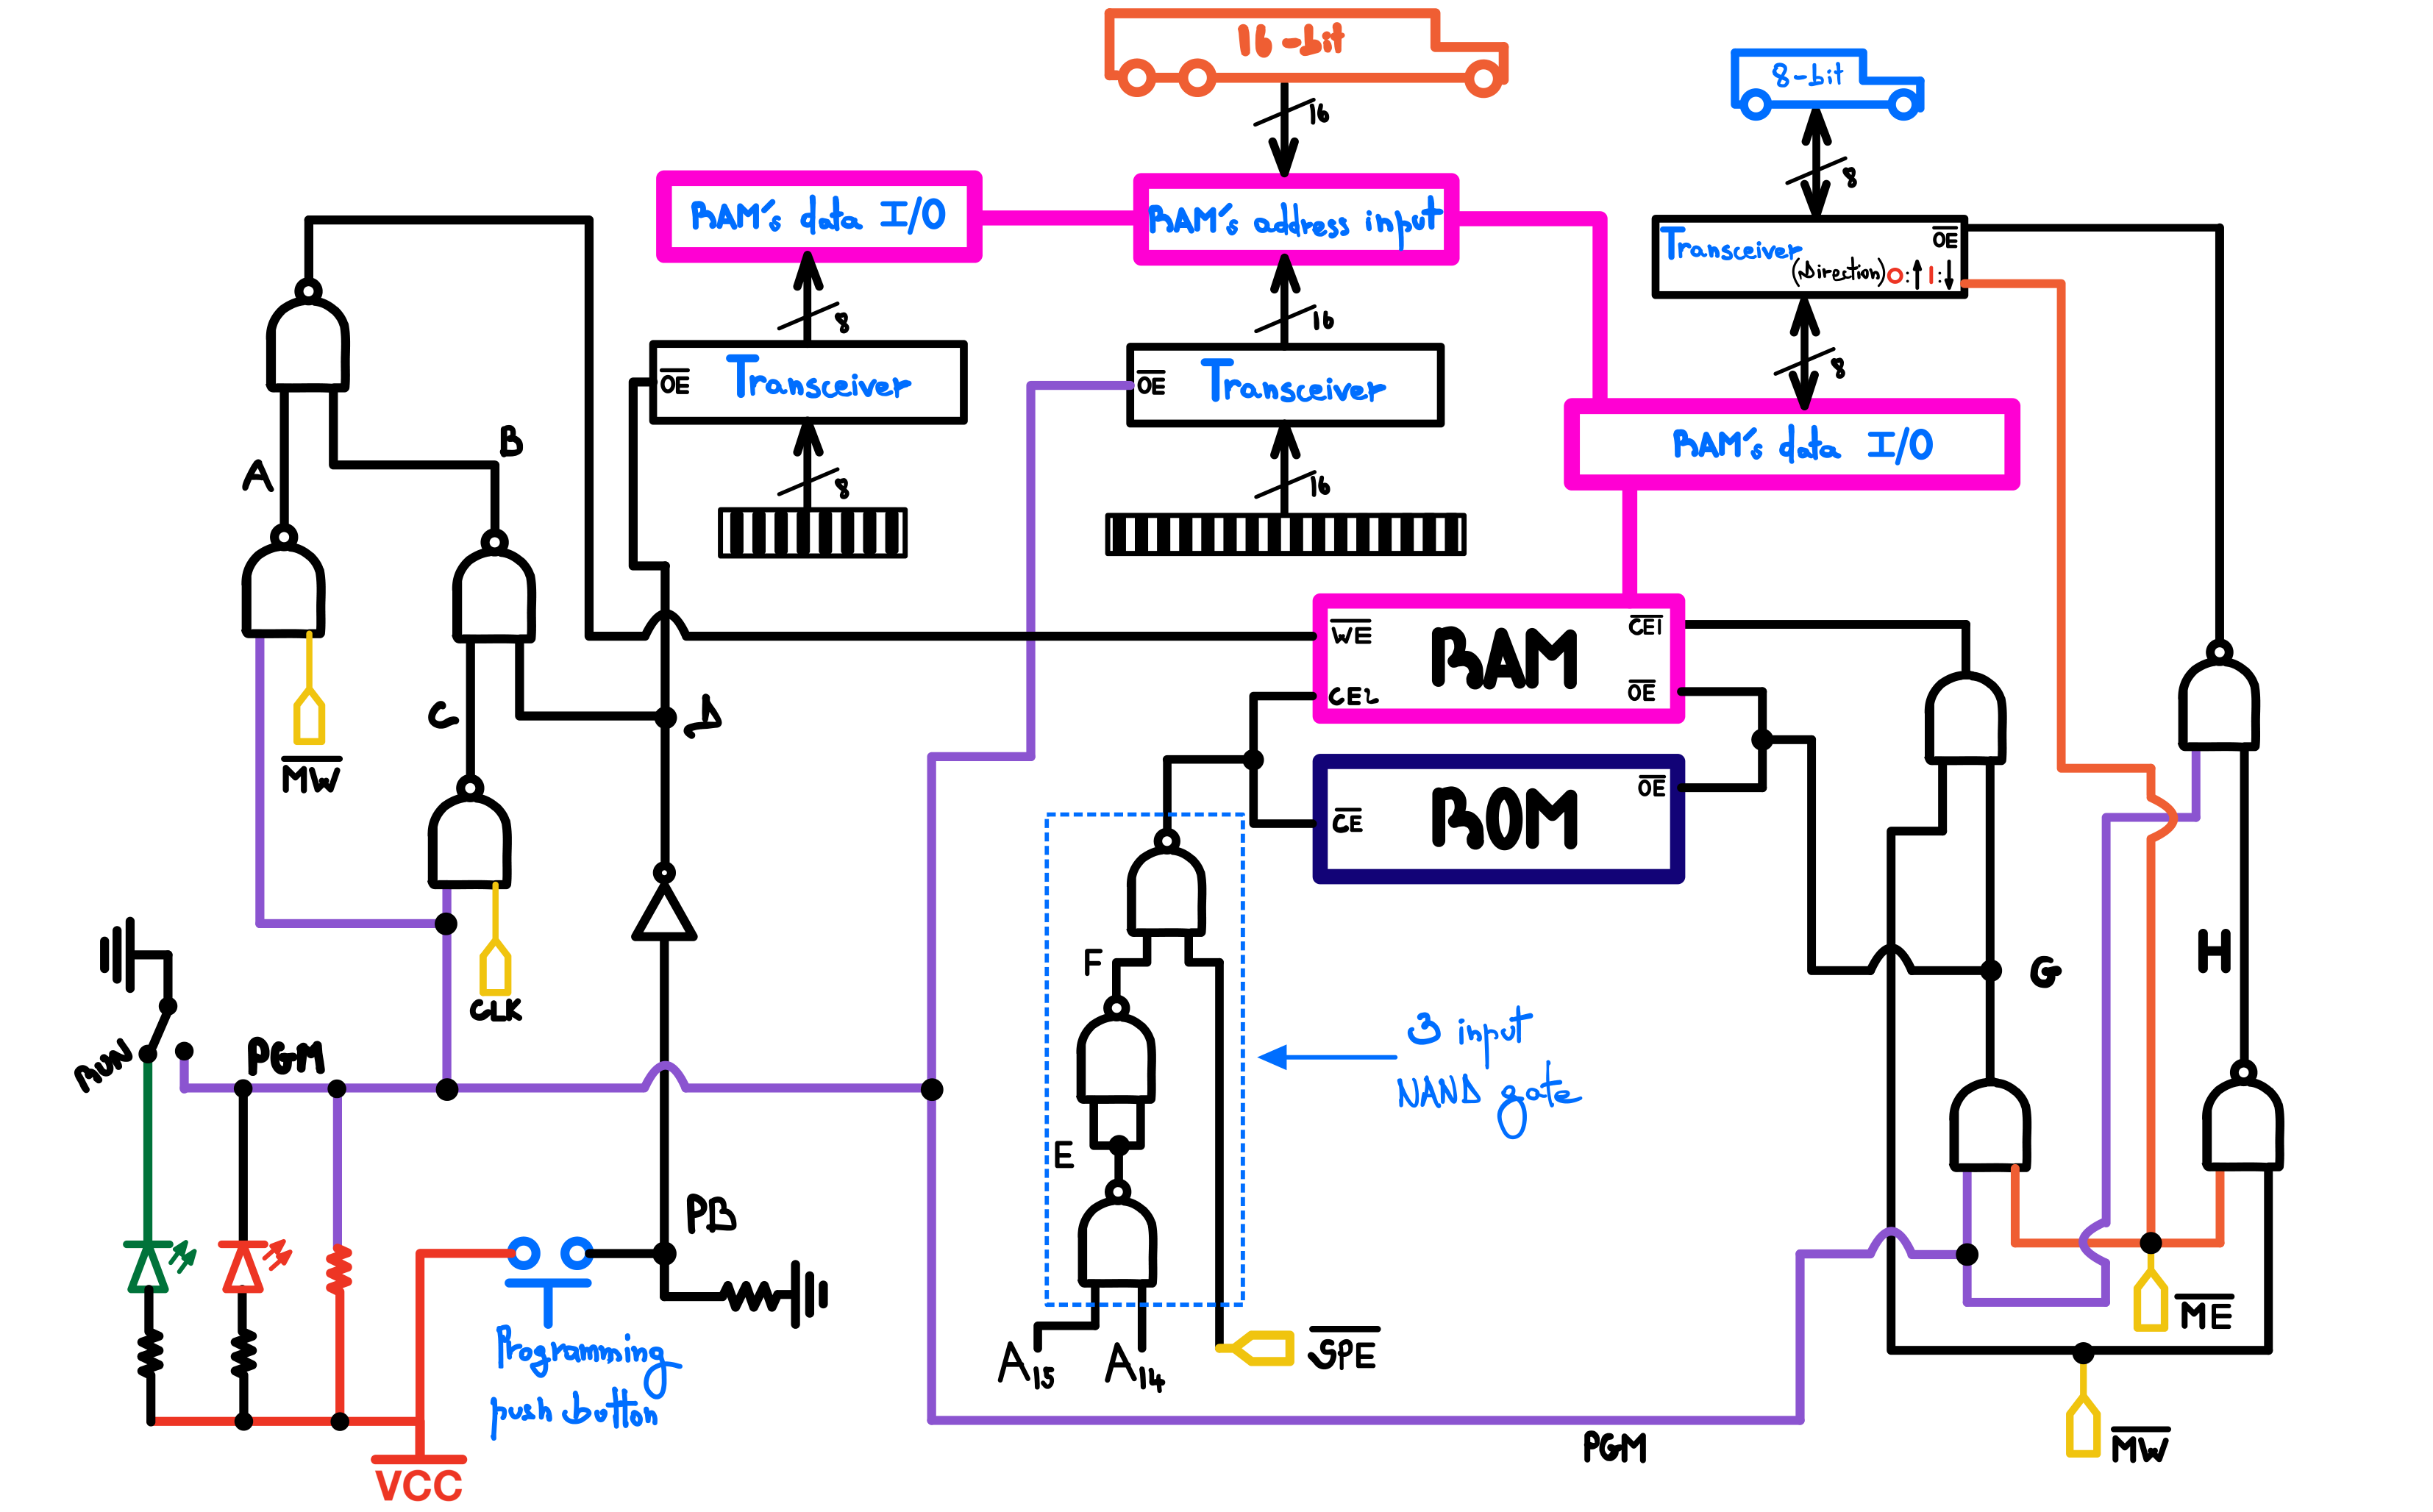 Figure 5: RAM Overview Diagram